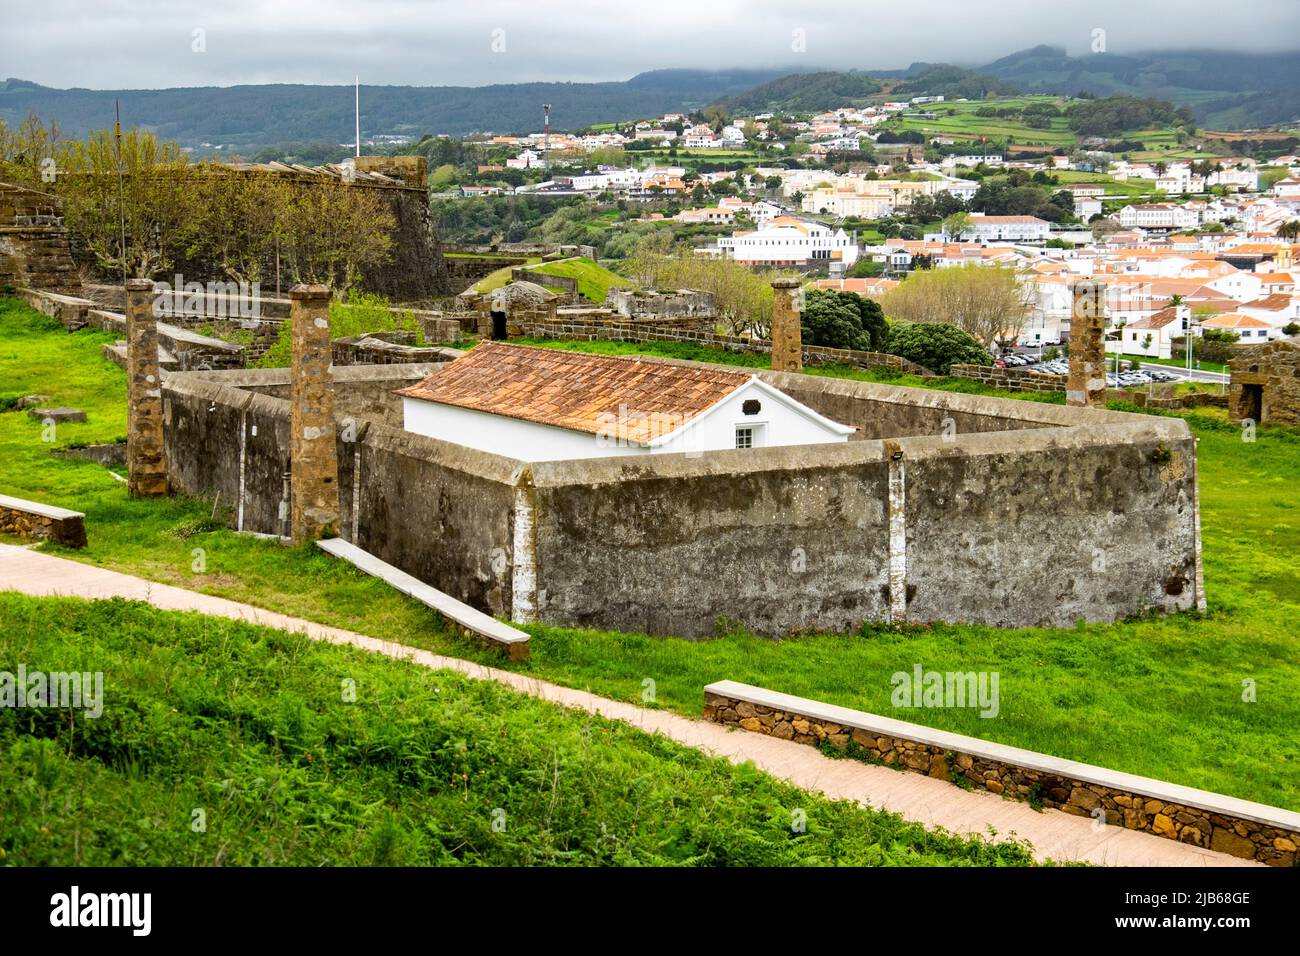 Anga de Heroismo, Isola di Terceira, Azzorre, Portogallo: Fortezza di Sao Joao Baptista, sentiero escursionistico Monte Brasil (PRC 04 ter). Foto Stock